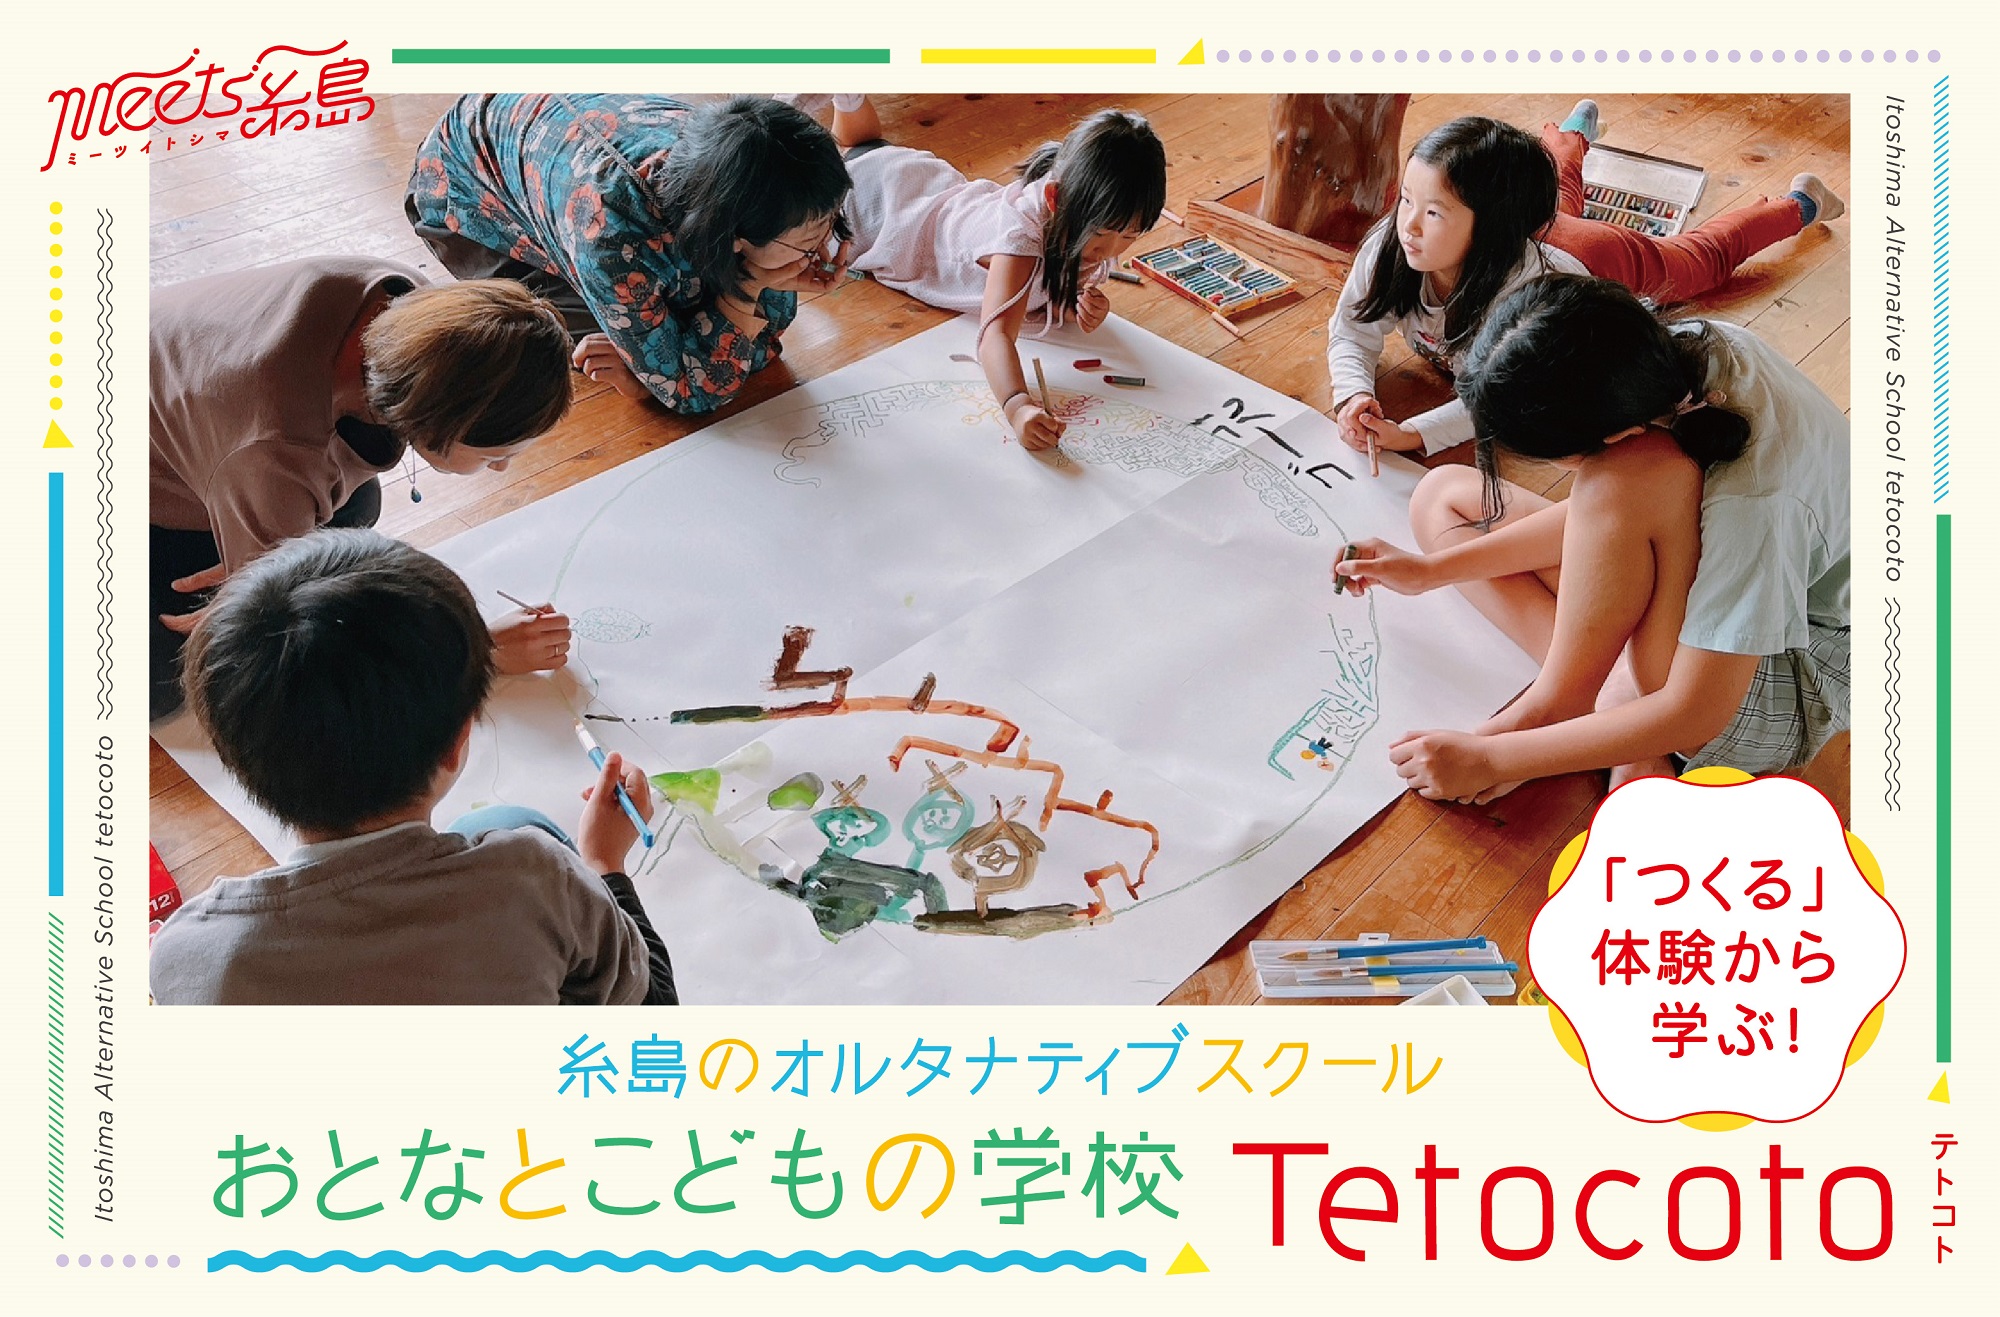 「つくる」体験から学ぶ！糸島のオルタナティブスクール「おとなとこどもの学校 Tetocoto」